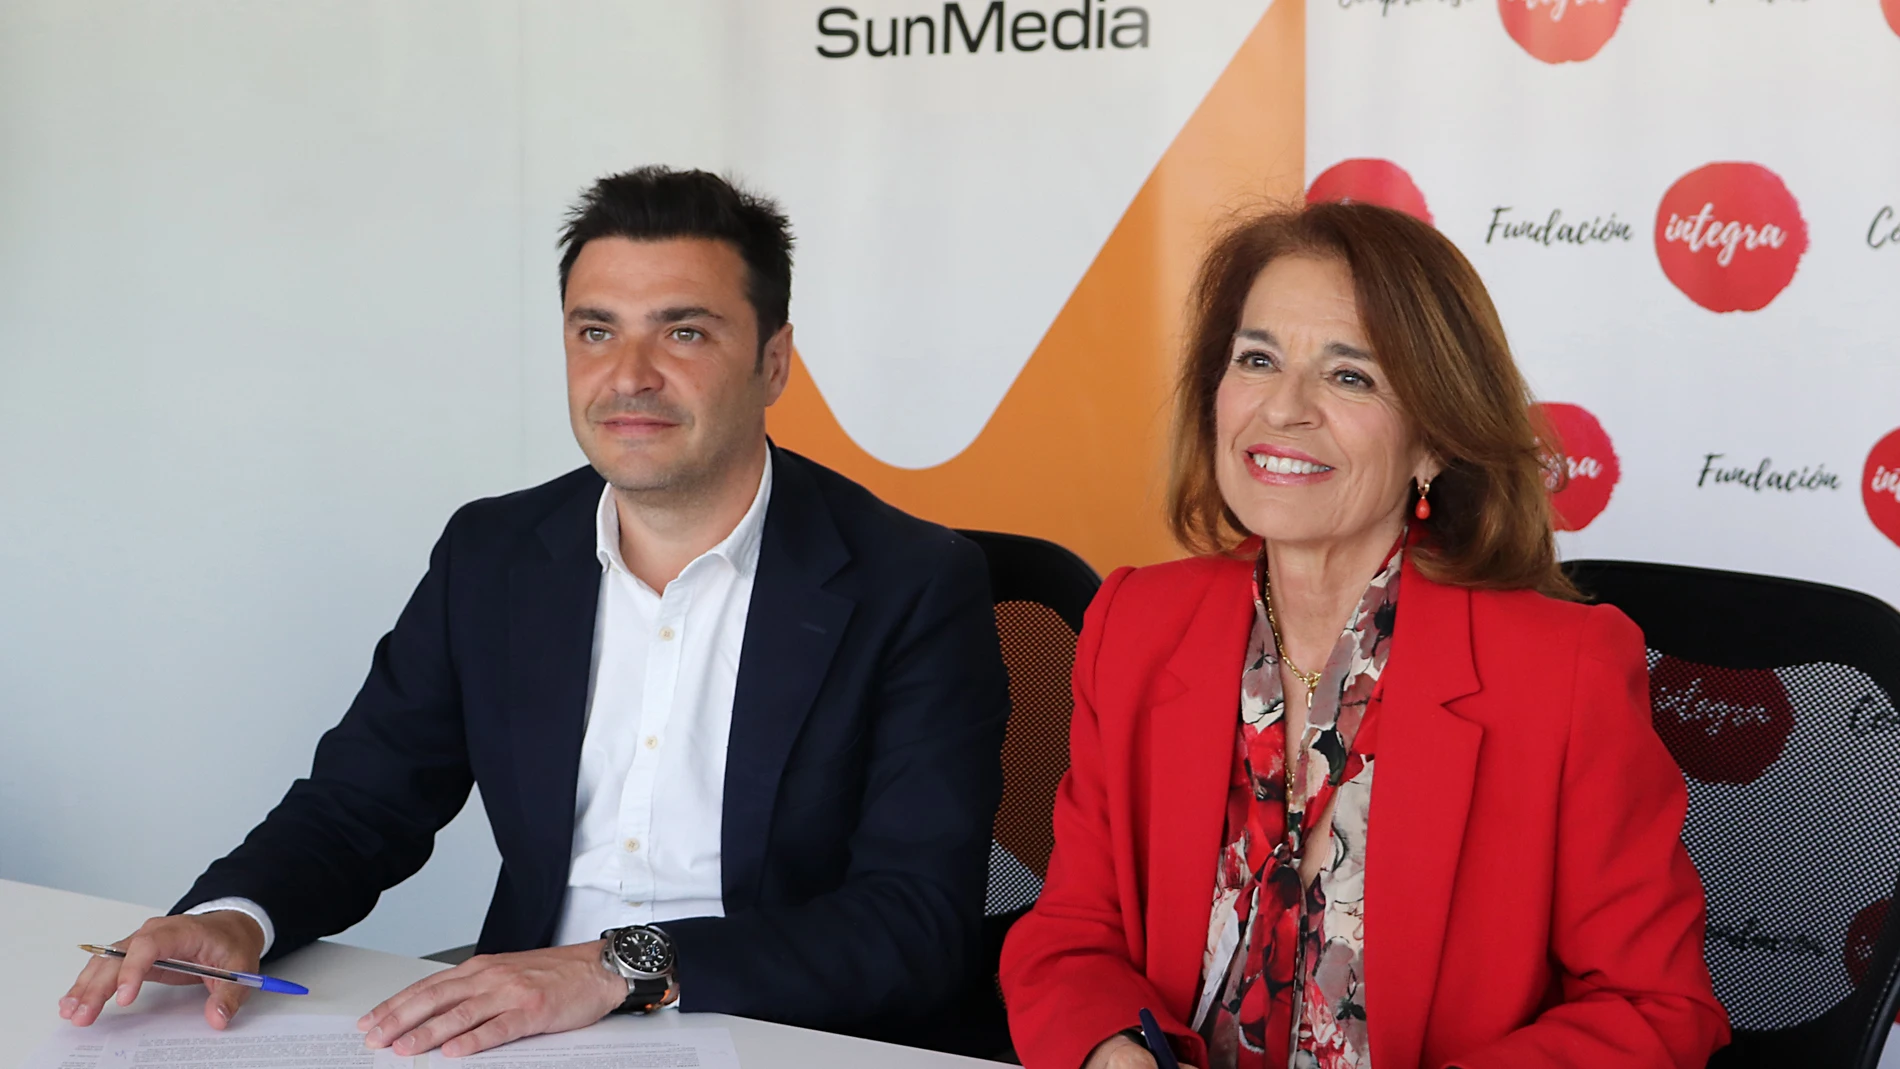 SunMedia se une a Compromiso Integra para apoyar la inserción laboral de personas con discapacidad y mujeres víctimas de violencia